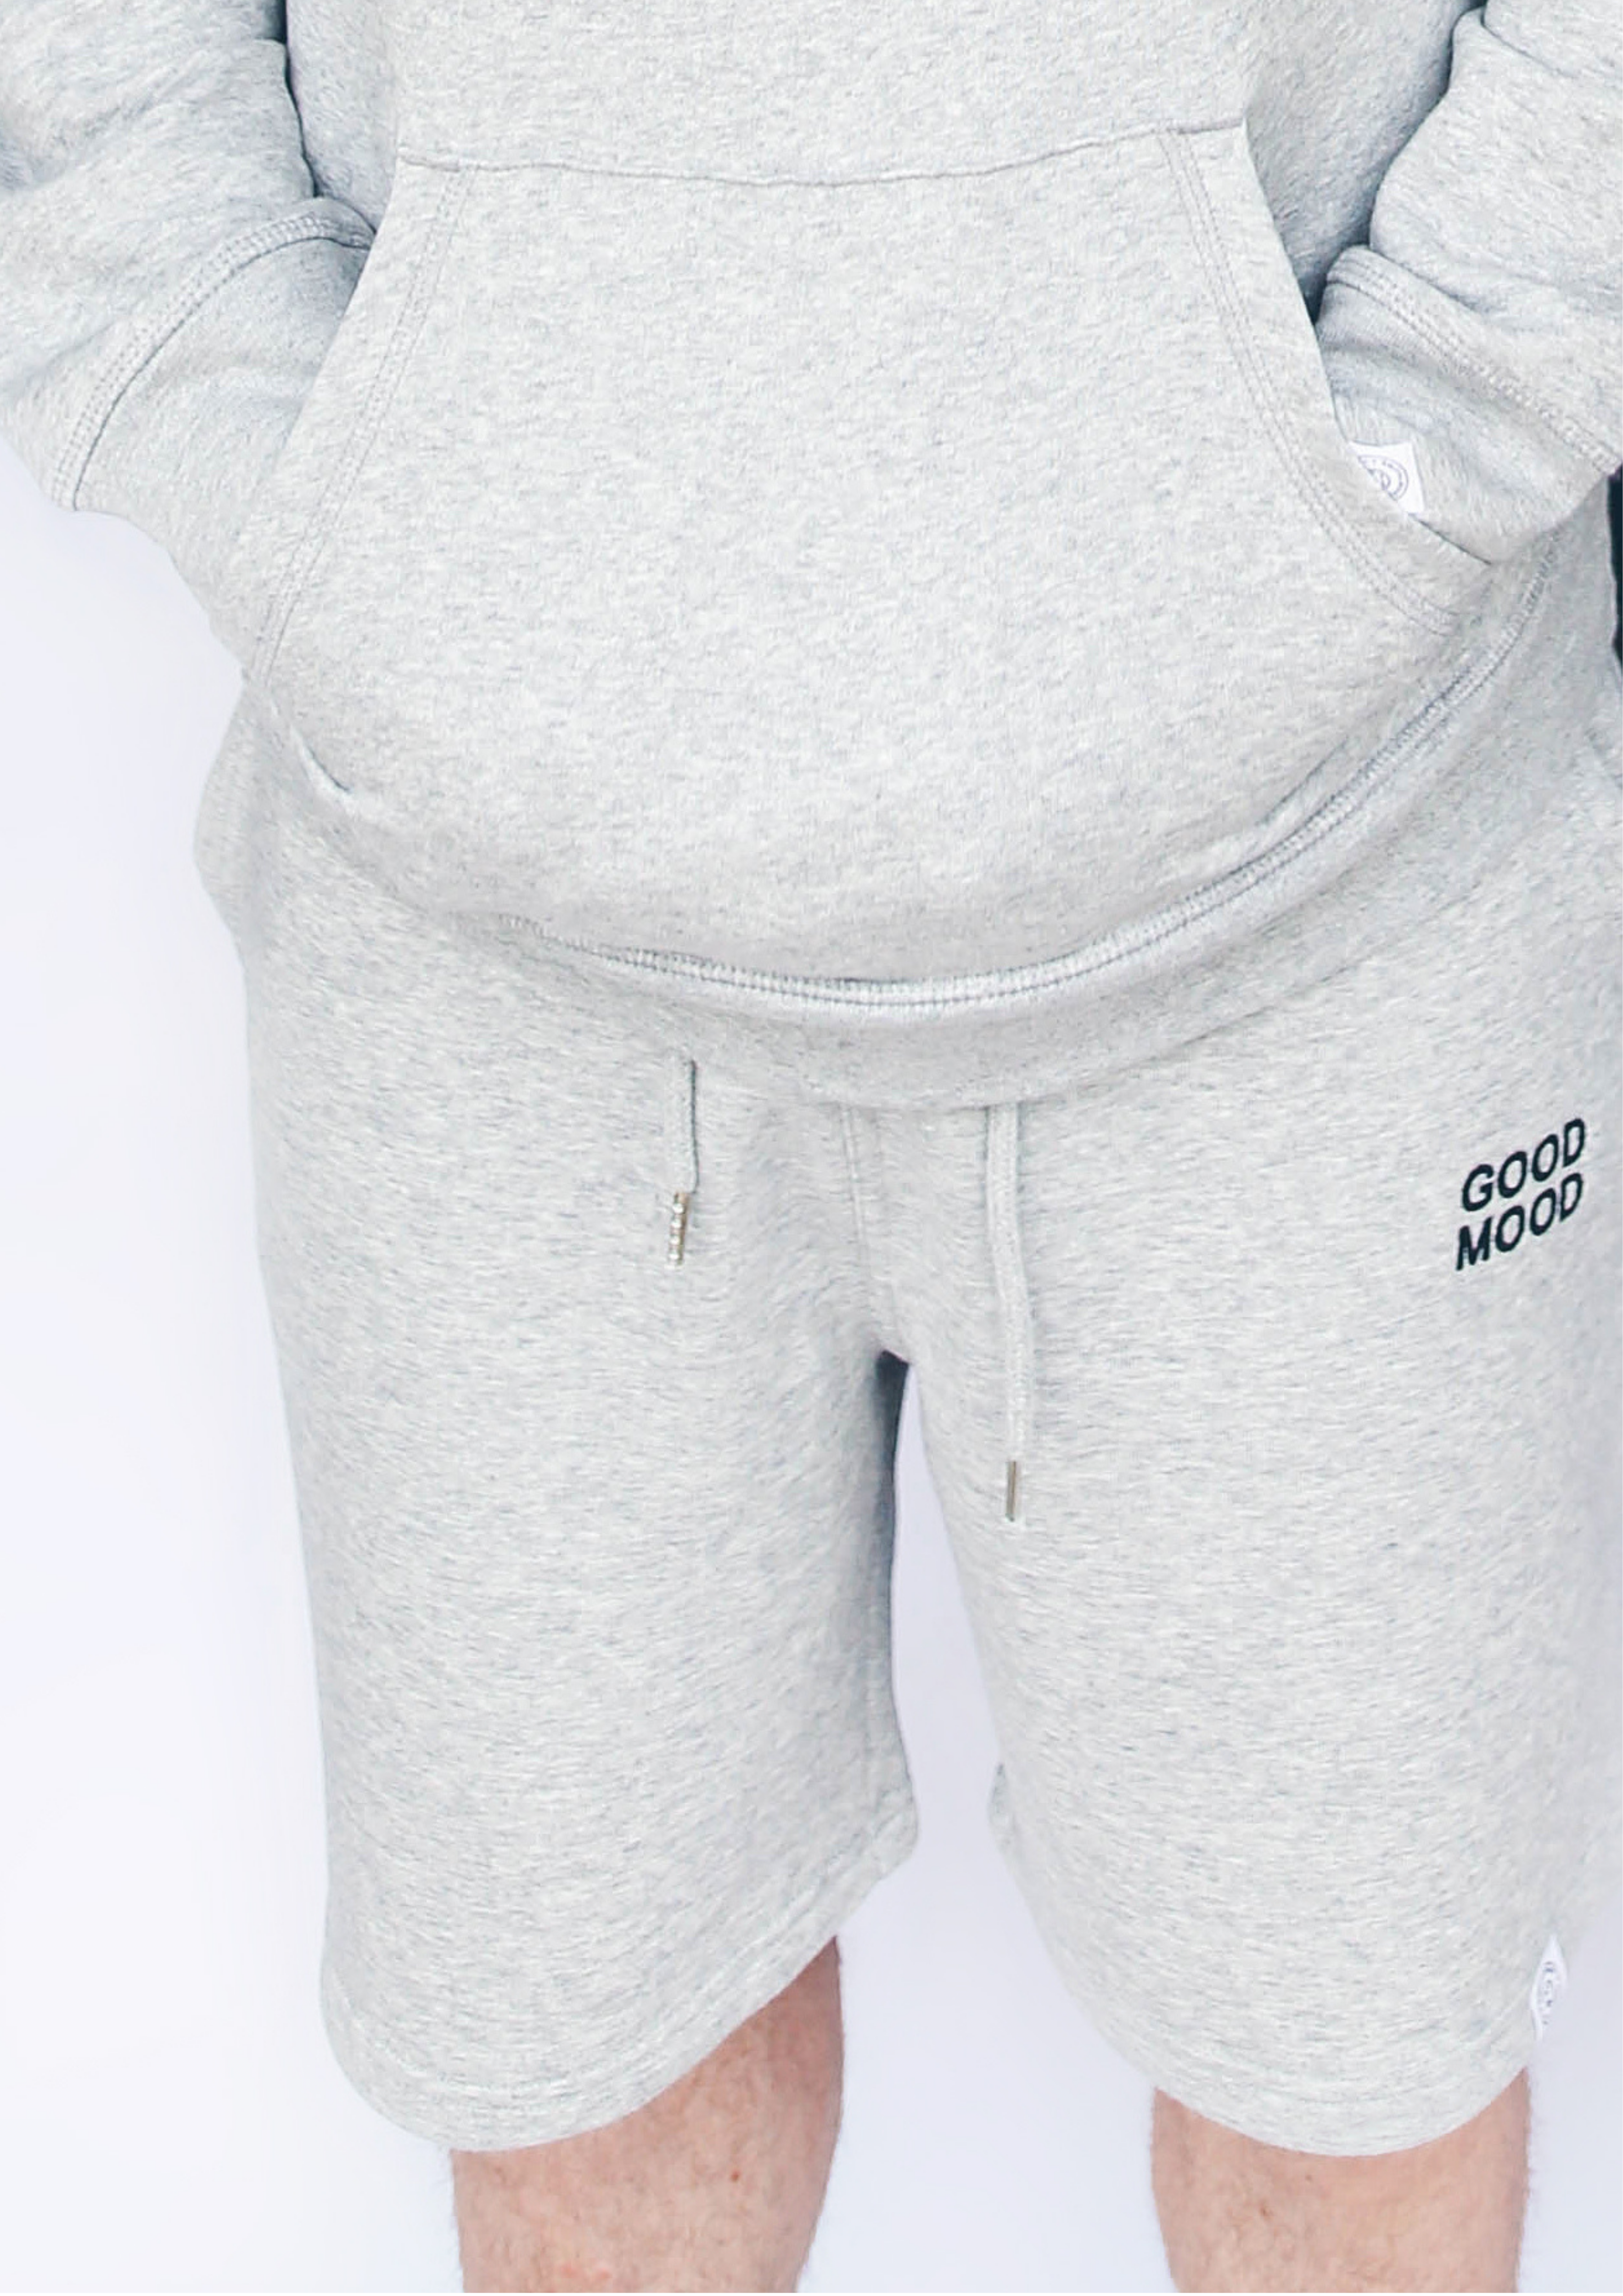 Unisex Grey & Black "Good Mood' -  Embroidered Shorts